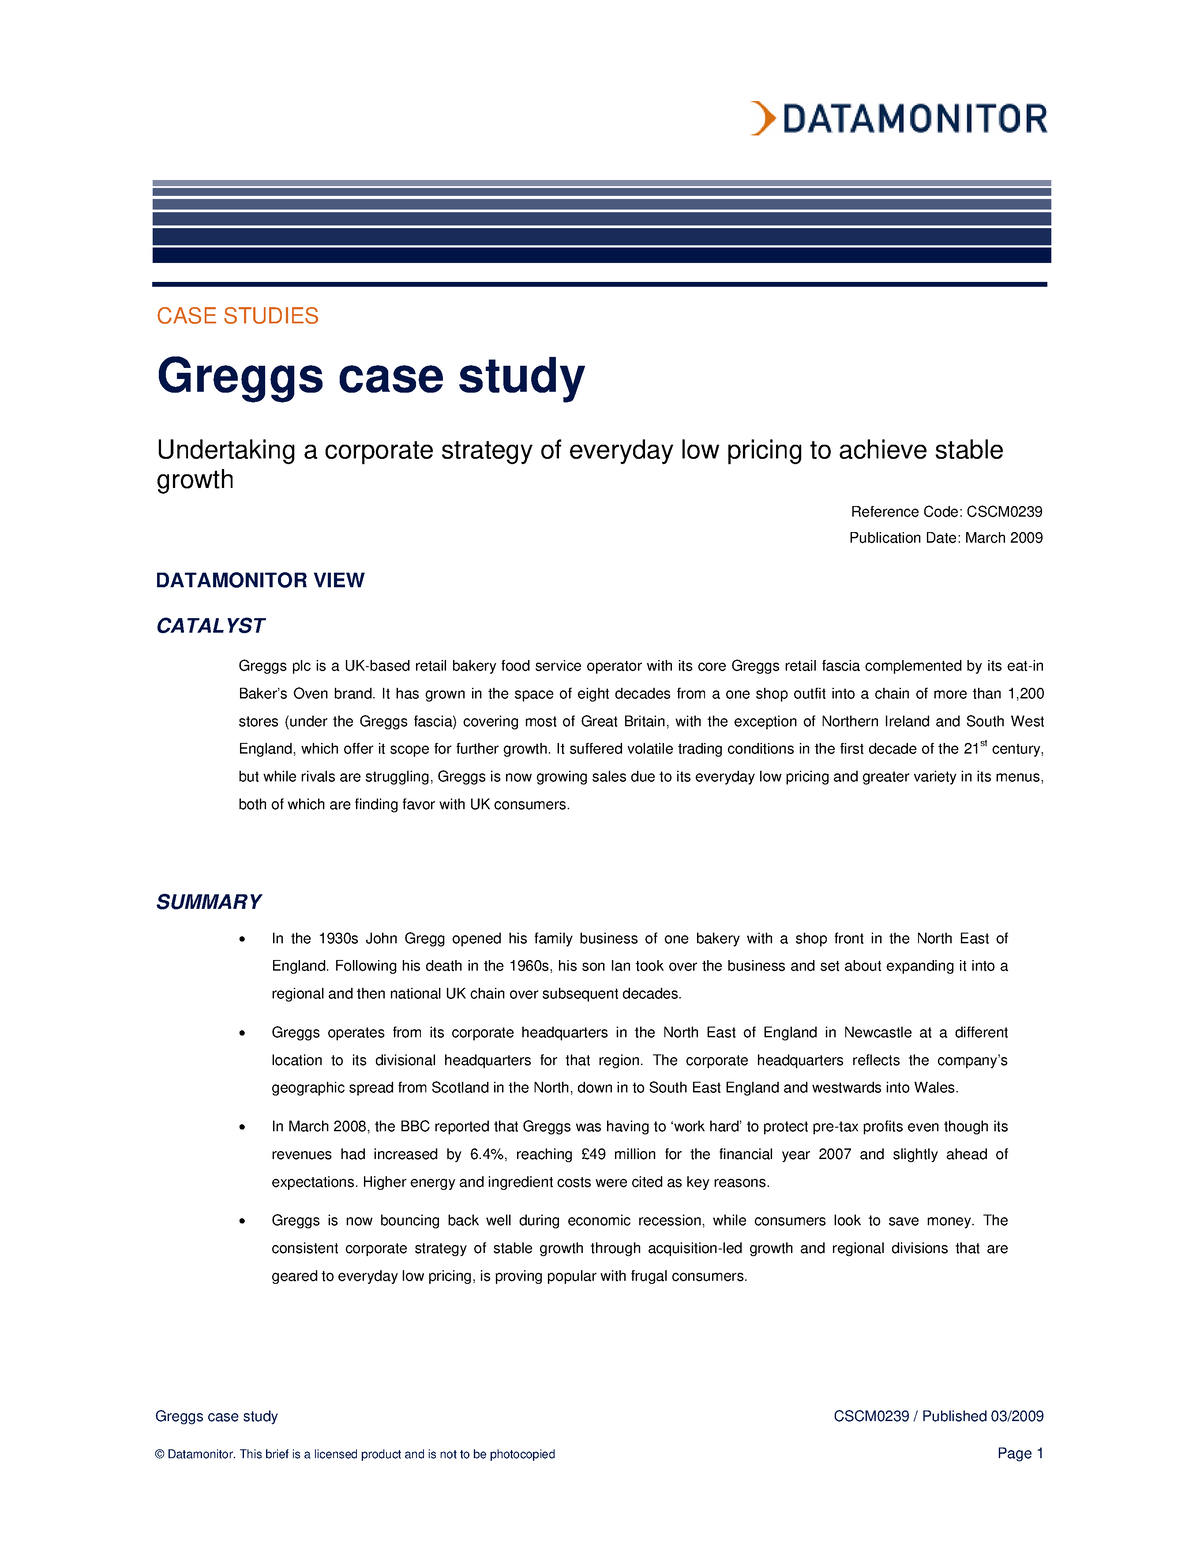 greggs case study gcse business